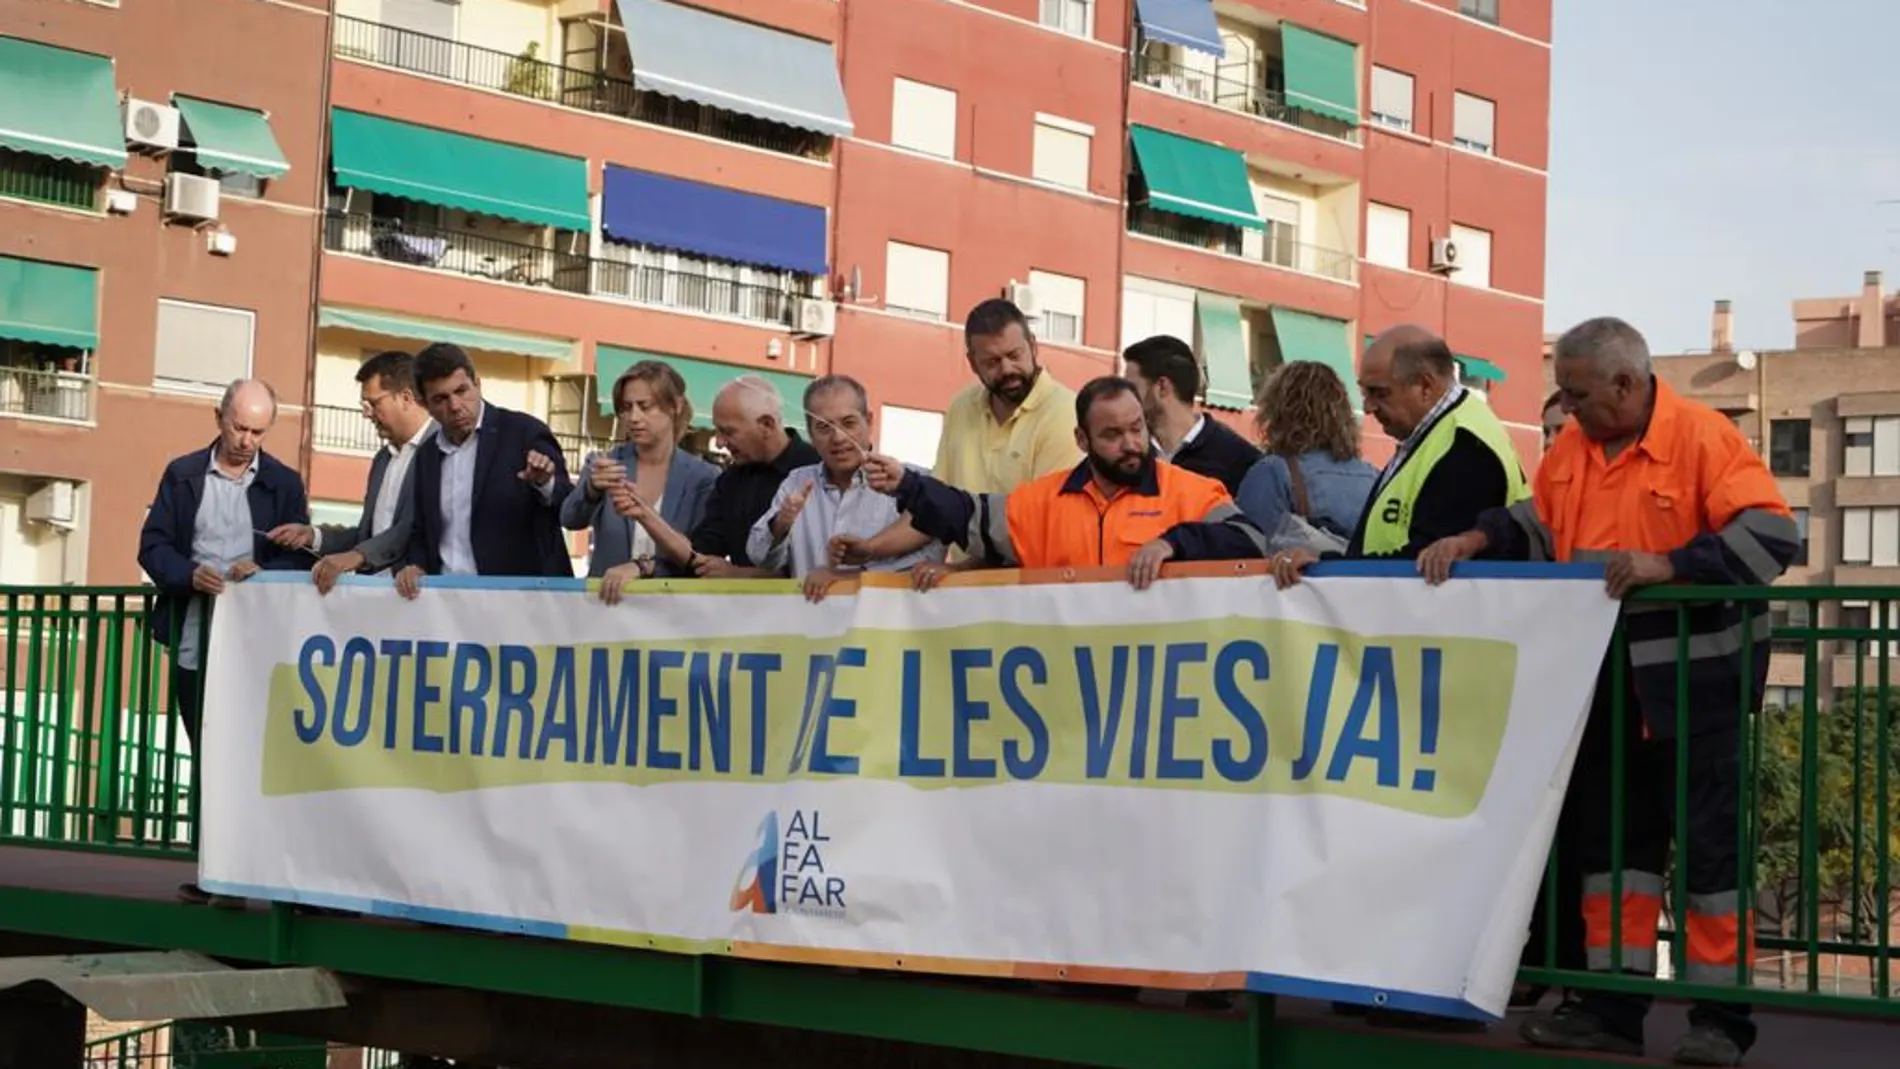 Mazón, junto a vecinos de Alfafar y su alcalde, ponen una pancarta reivindicando el soterramiento de las vías